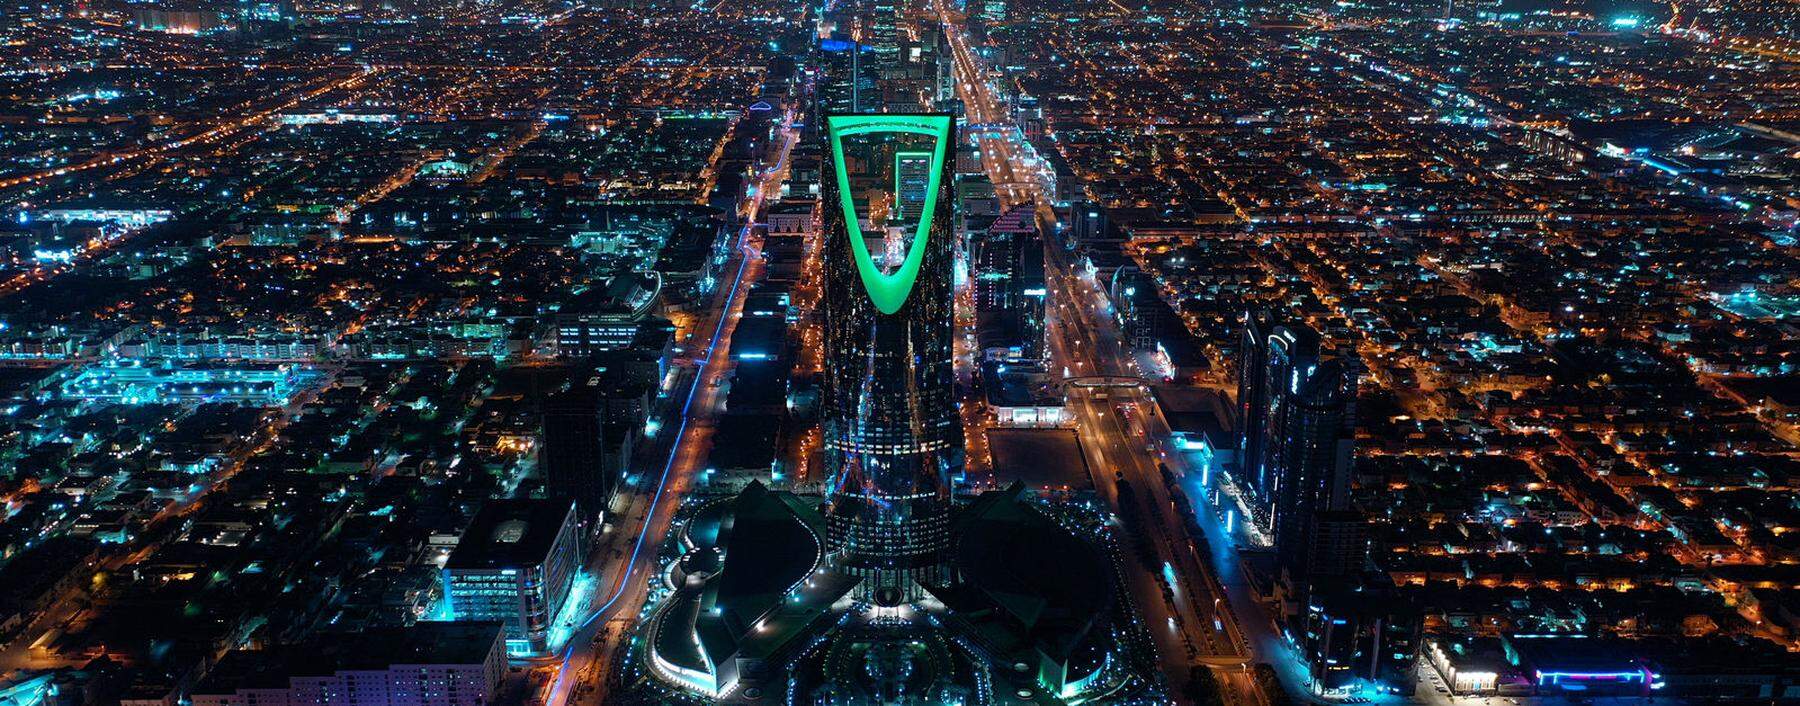 Ausblick für Schwindelfreie: Die Aussichtsplattform Sky Bridge im Kingdom Centre Tower bietet ein Rundumpanorama Riads.